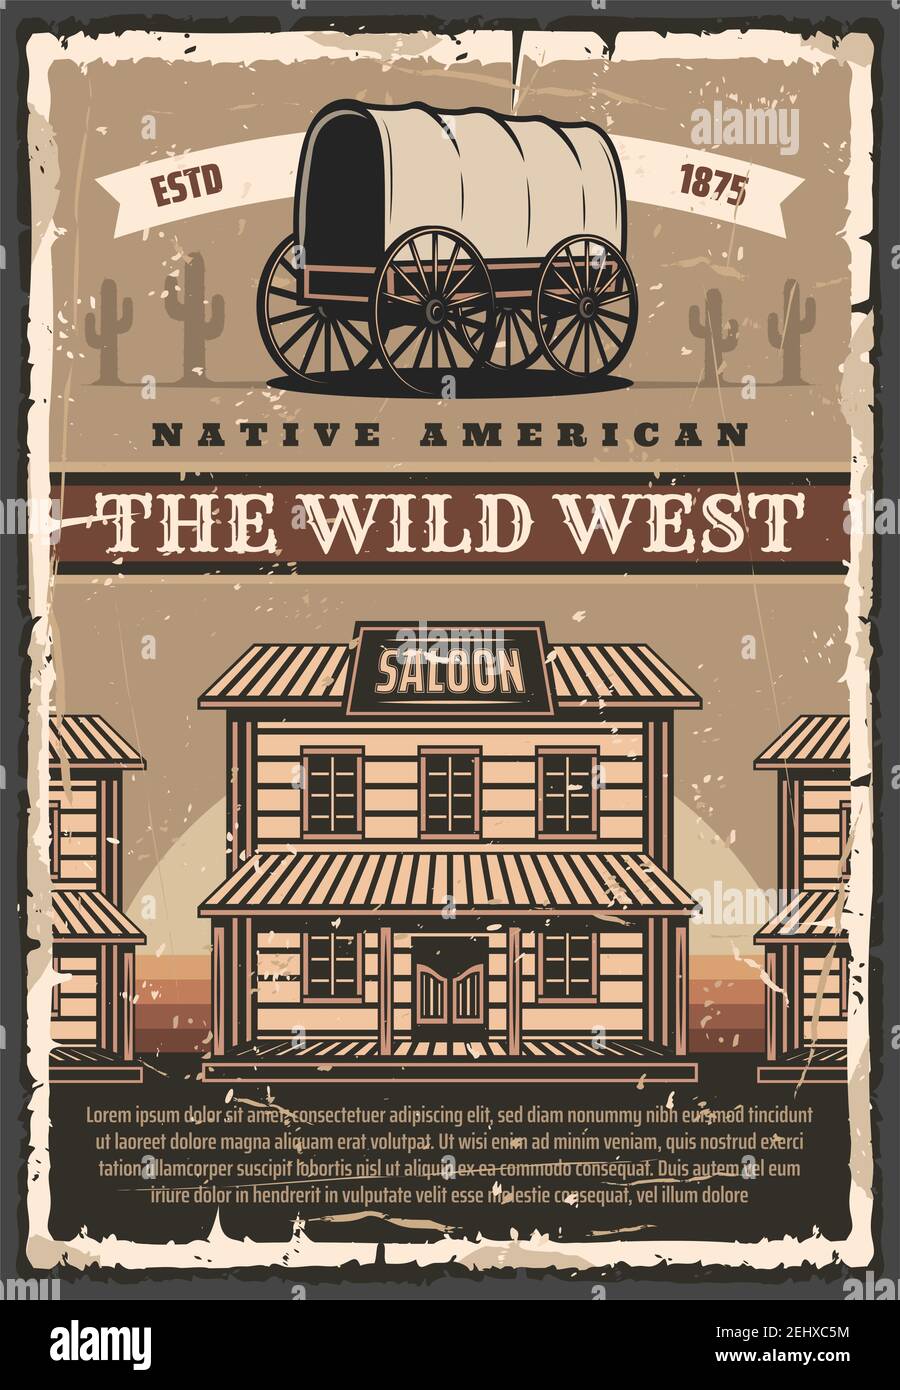 Wild West Texas Retro Poster von Cowboy Saloon Bar und Kakteen in der Wüste. Vector American Vintage Design von Pferdewagen Kutsche und Western america w Stock Vektor